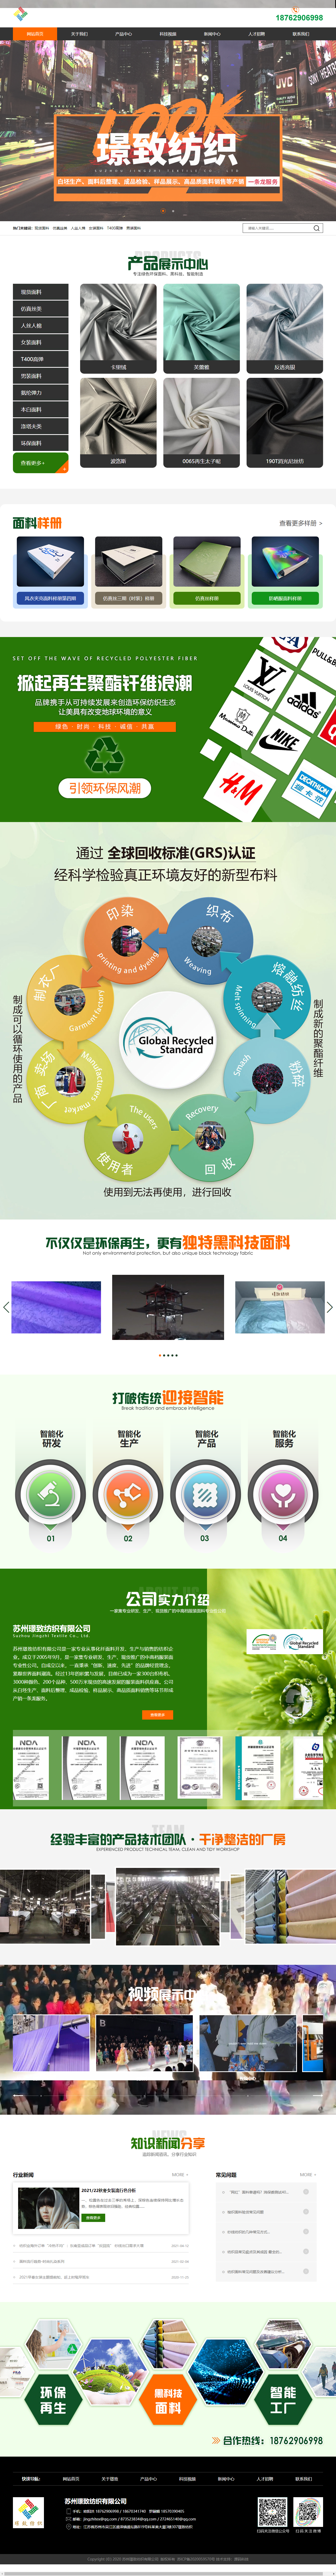 苏州璟致纺织科技有限公司网站案例